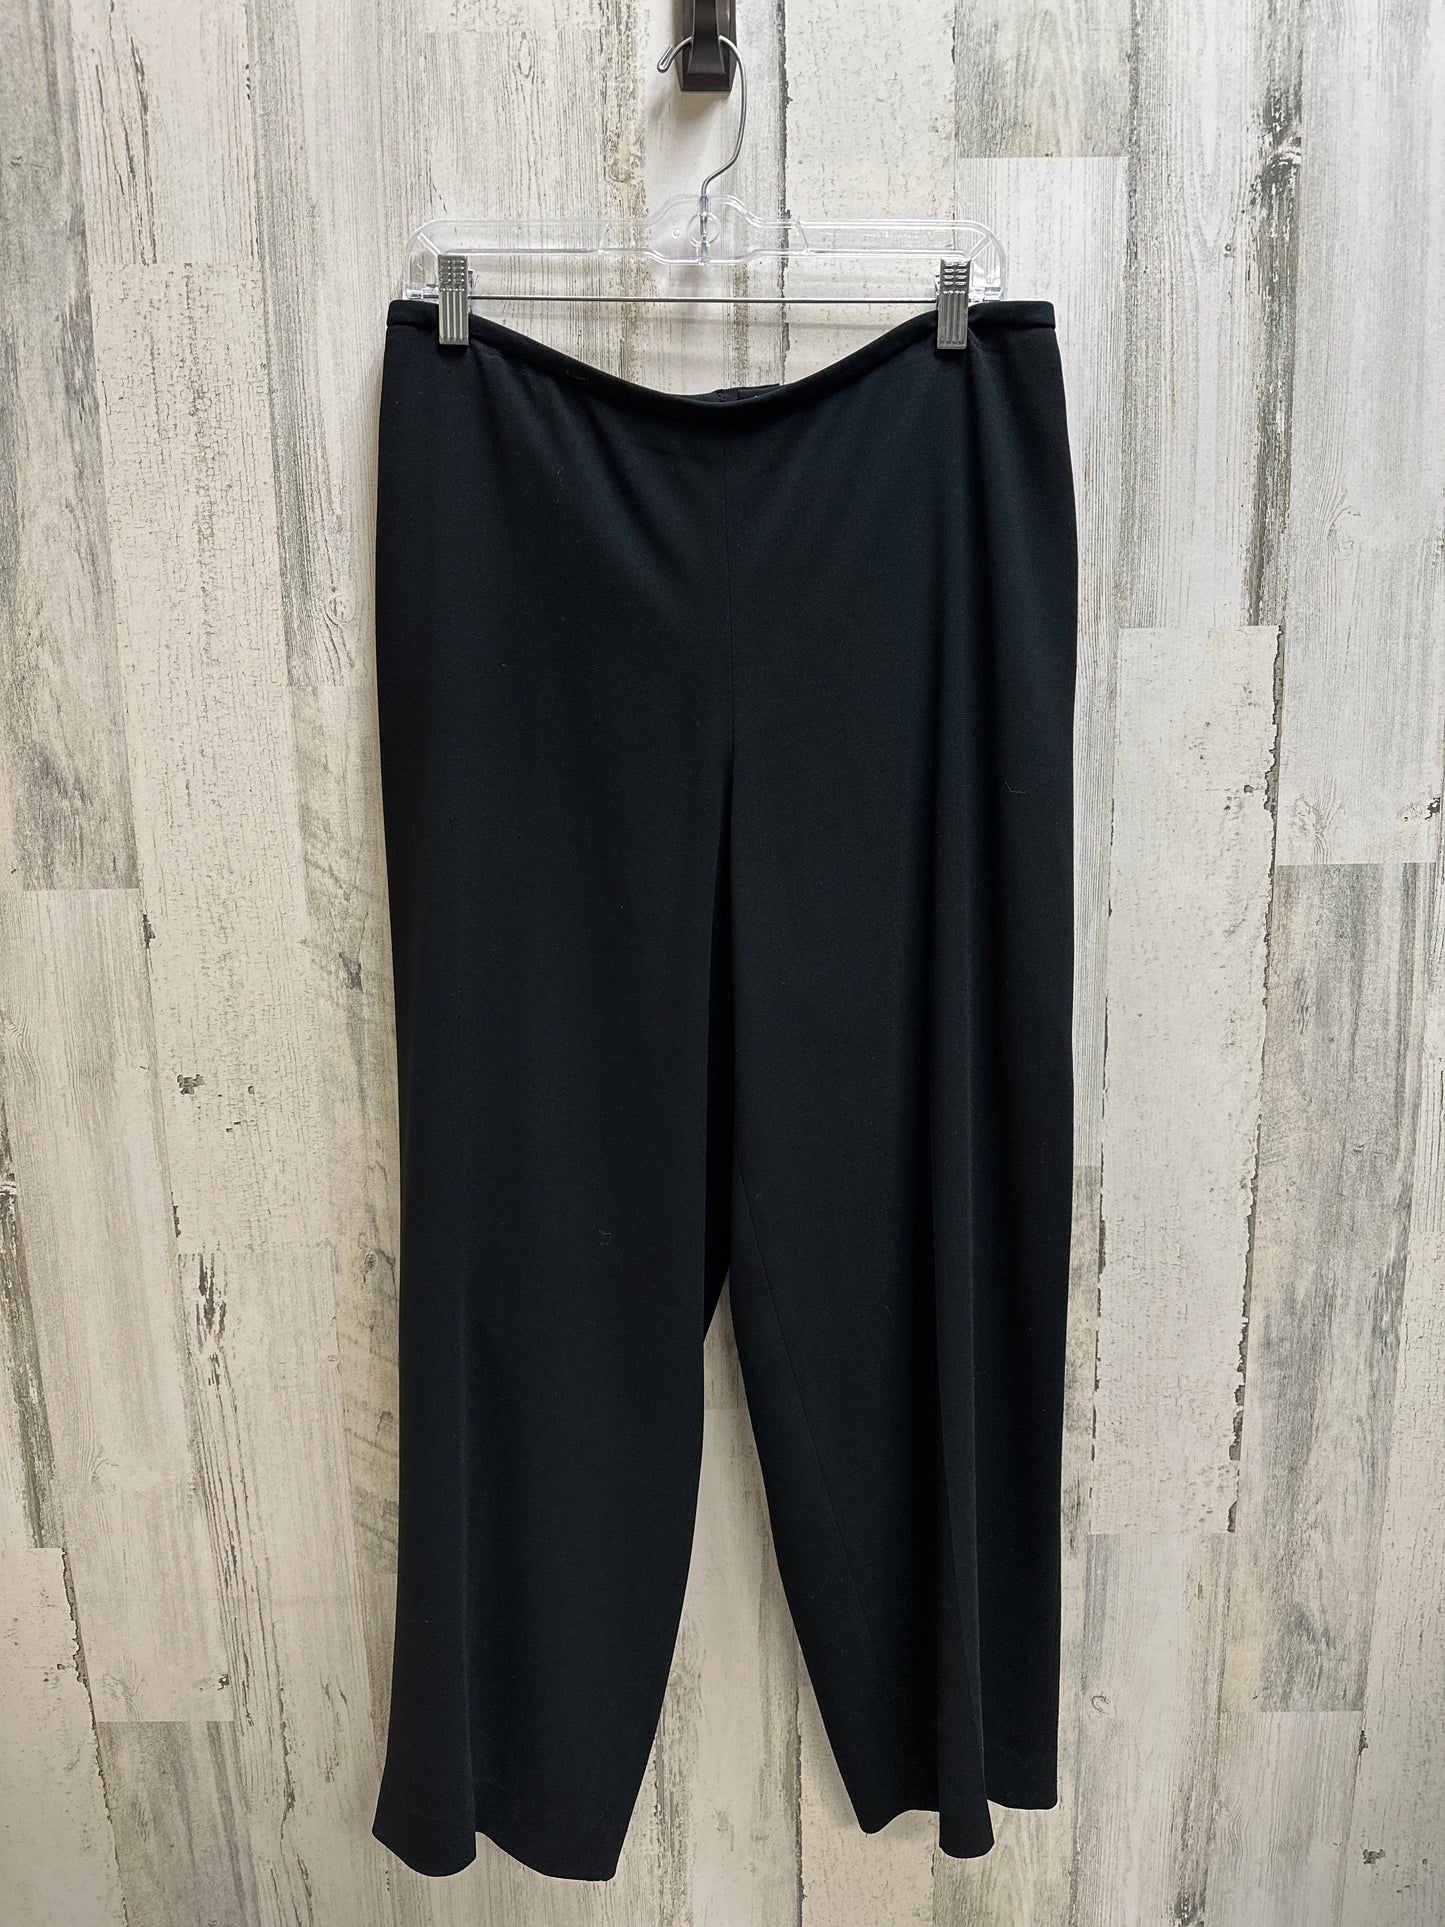 Pants Work/dress By Liz Claiborne  Size: 14